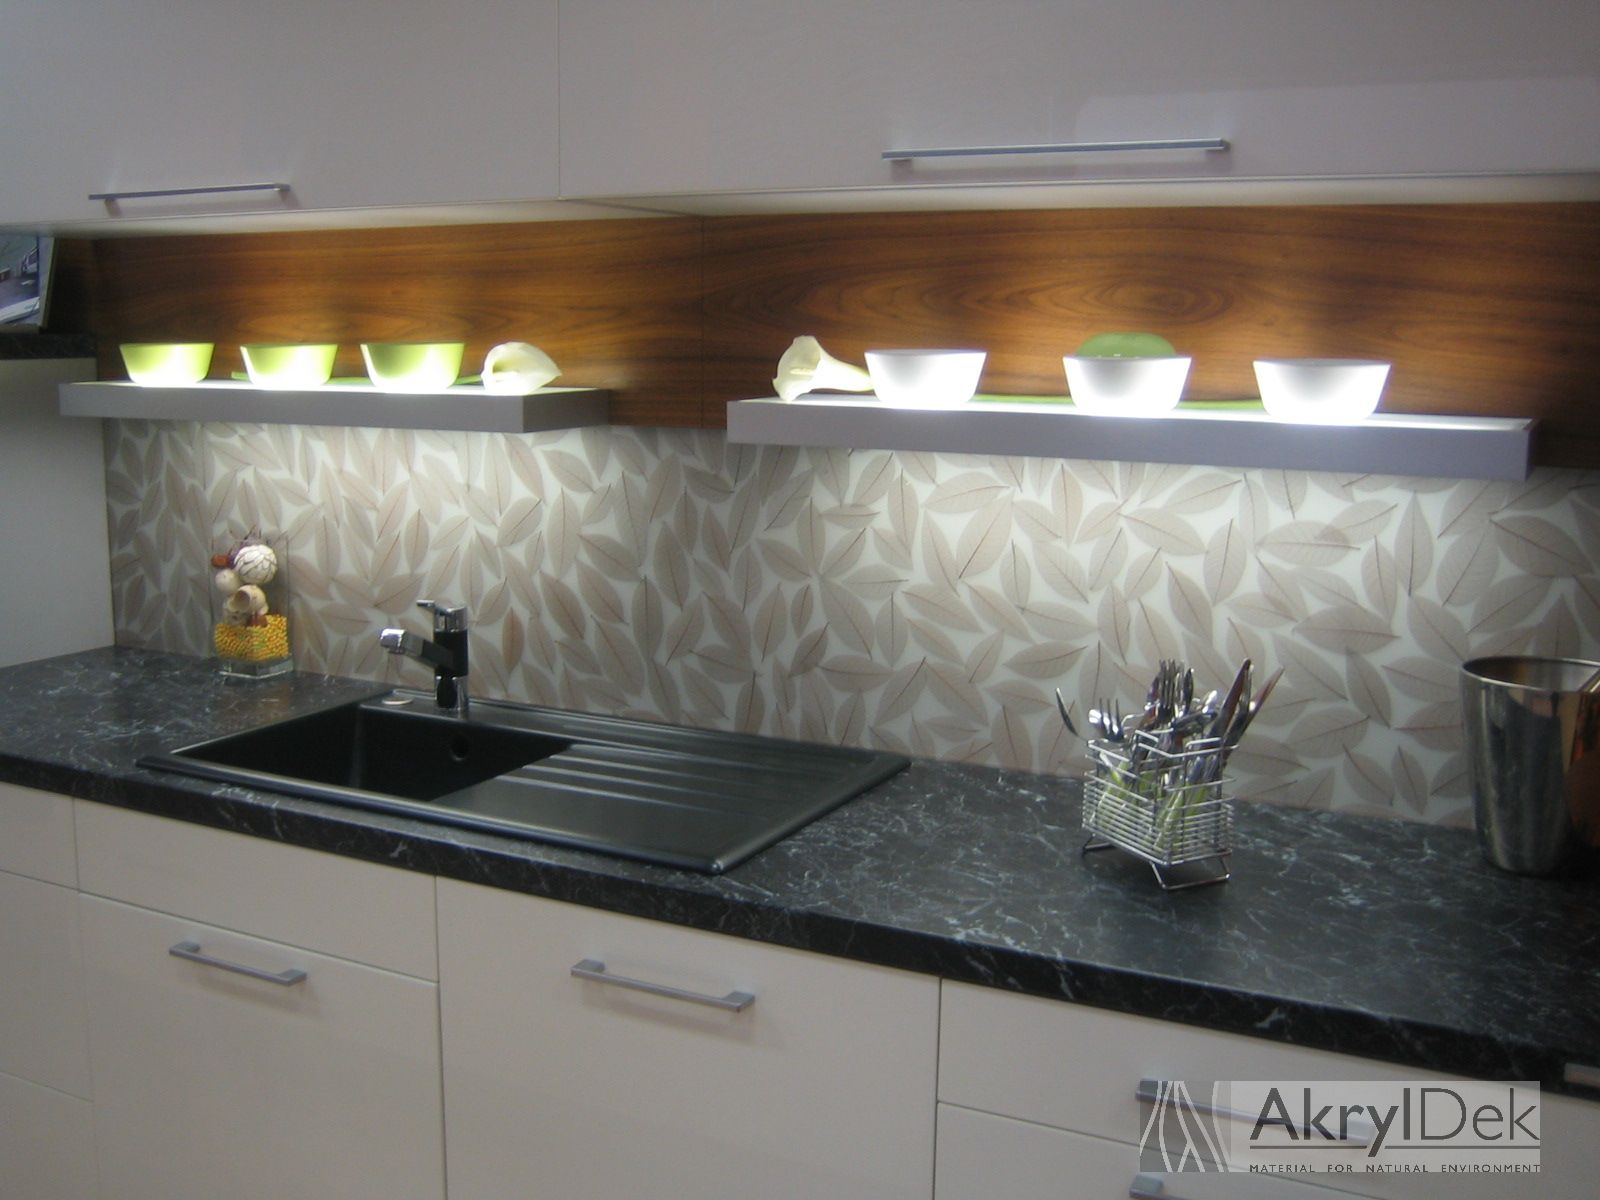 Obkladový panel do kuchyně s přírodním motivem listů - AkrylDek s.r.o.